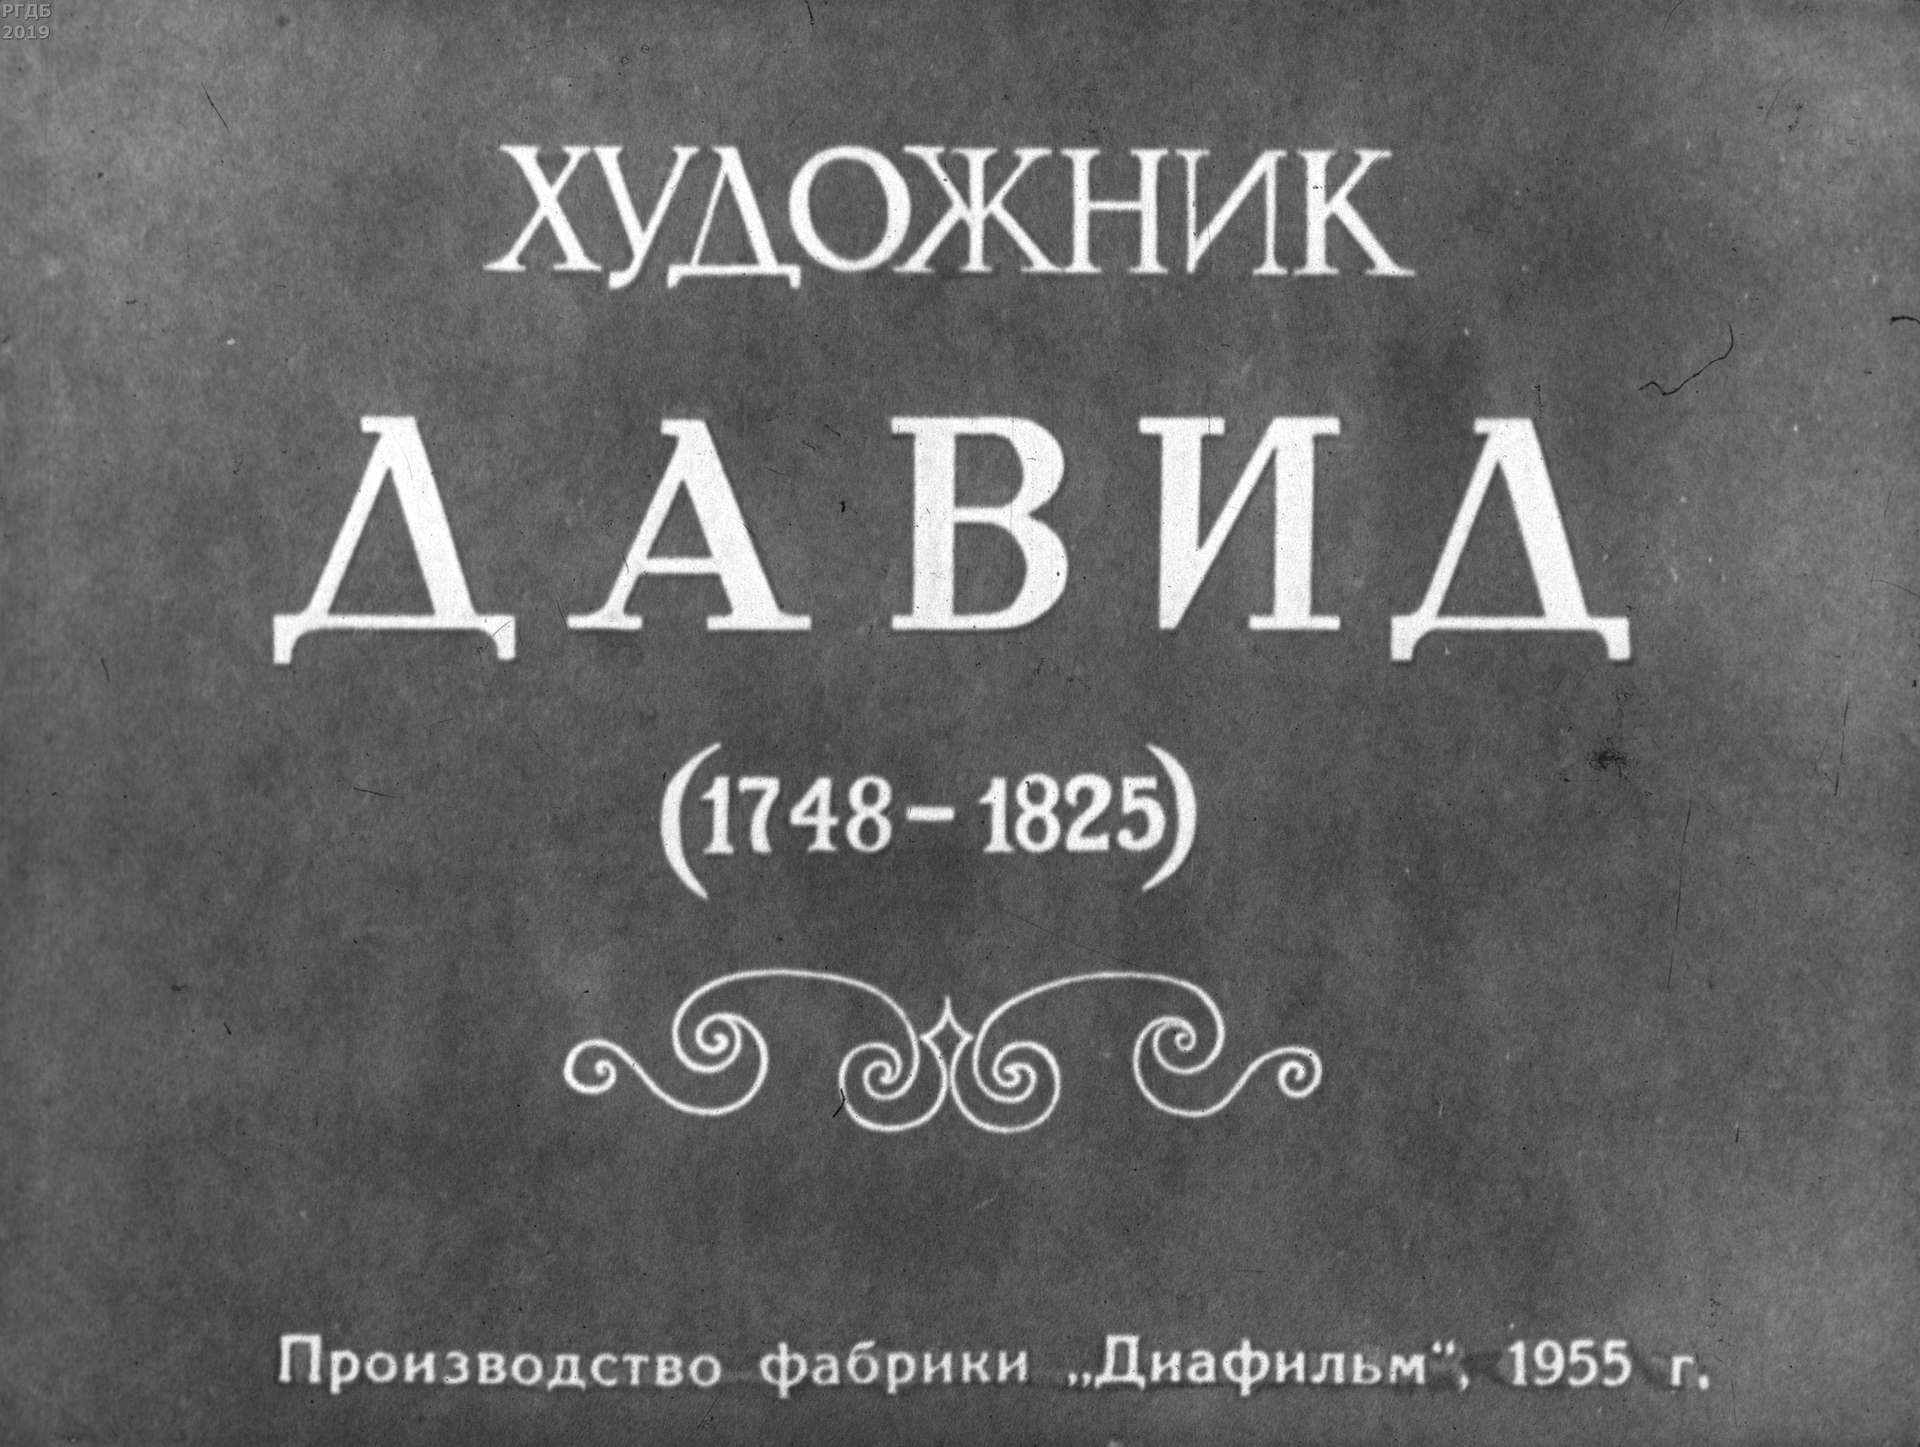 Художник Давид. 1748-1825